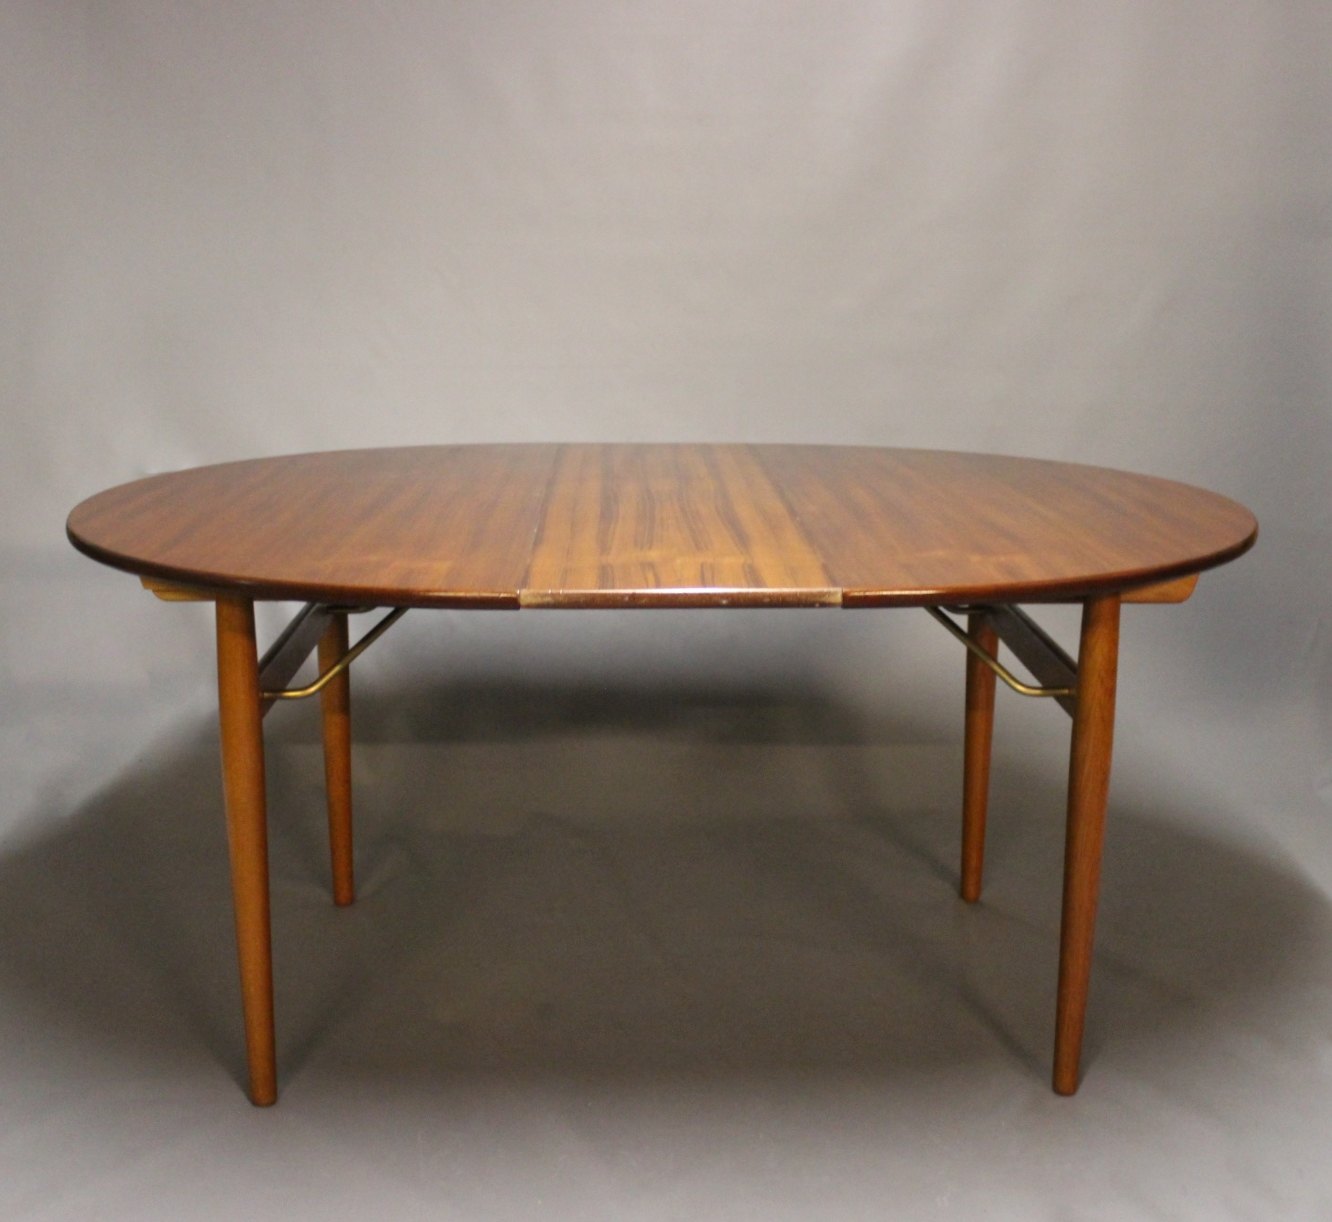 matchmaker Optimisme Næste Rundt spisebord med udtræk i teak og eg af Hans J. Wegner fra 1960erne. *  5000m2 - Osted Antik & Design